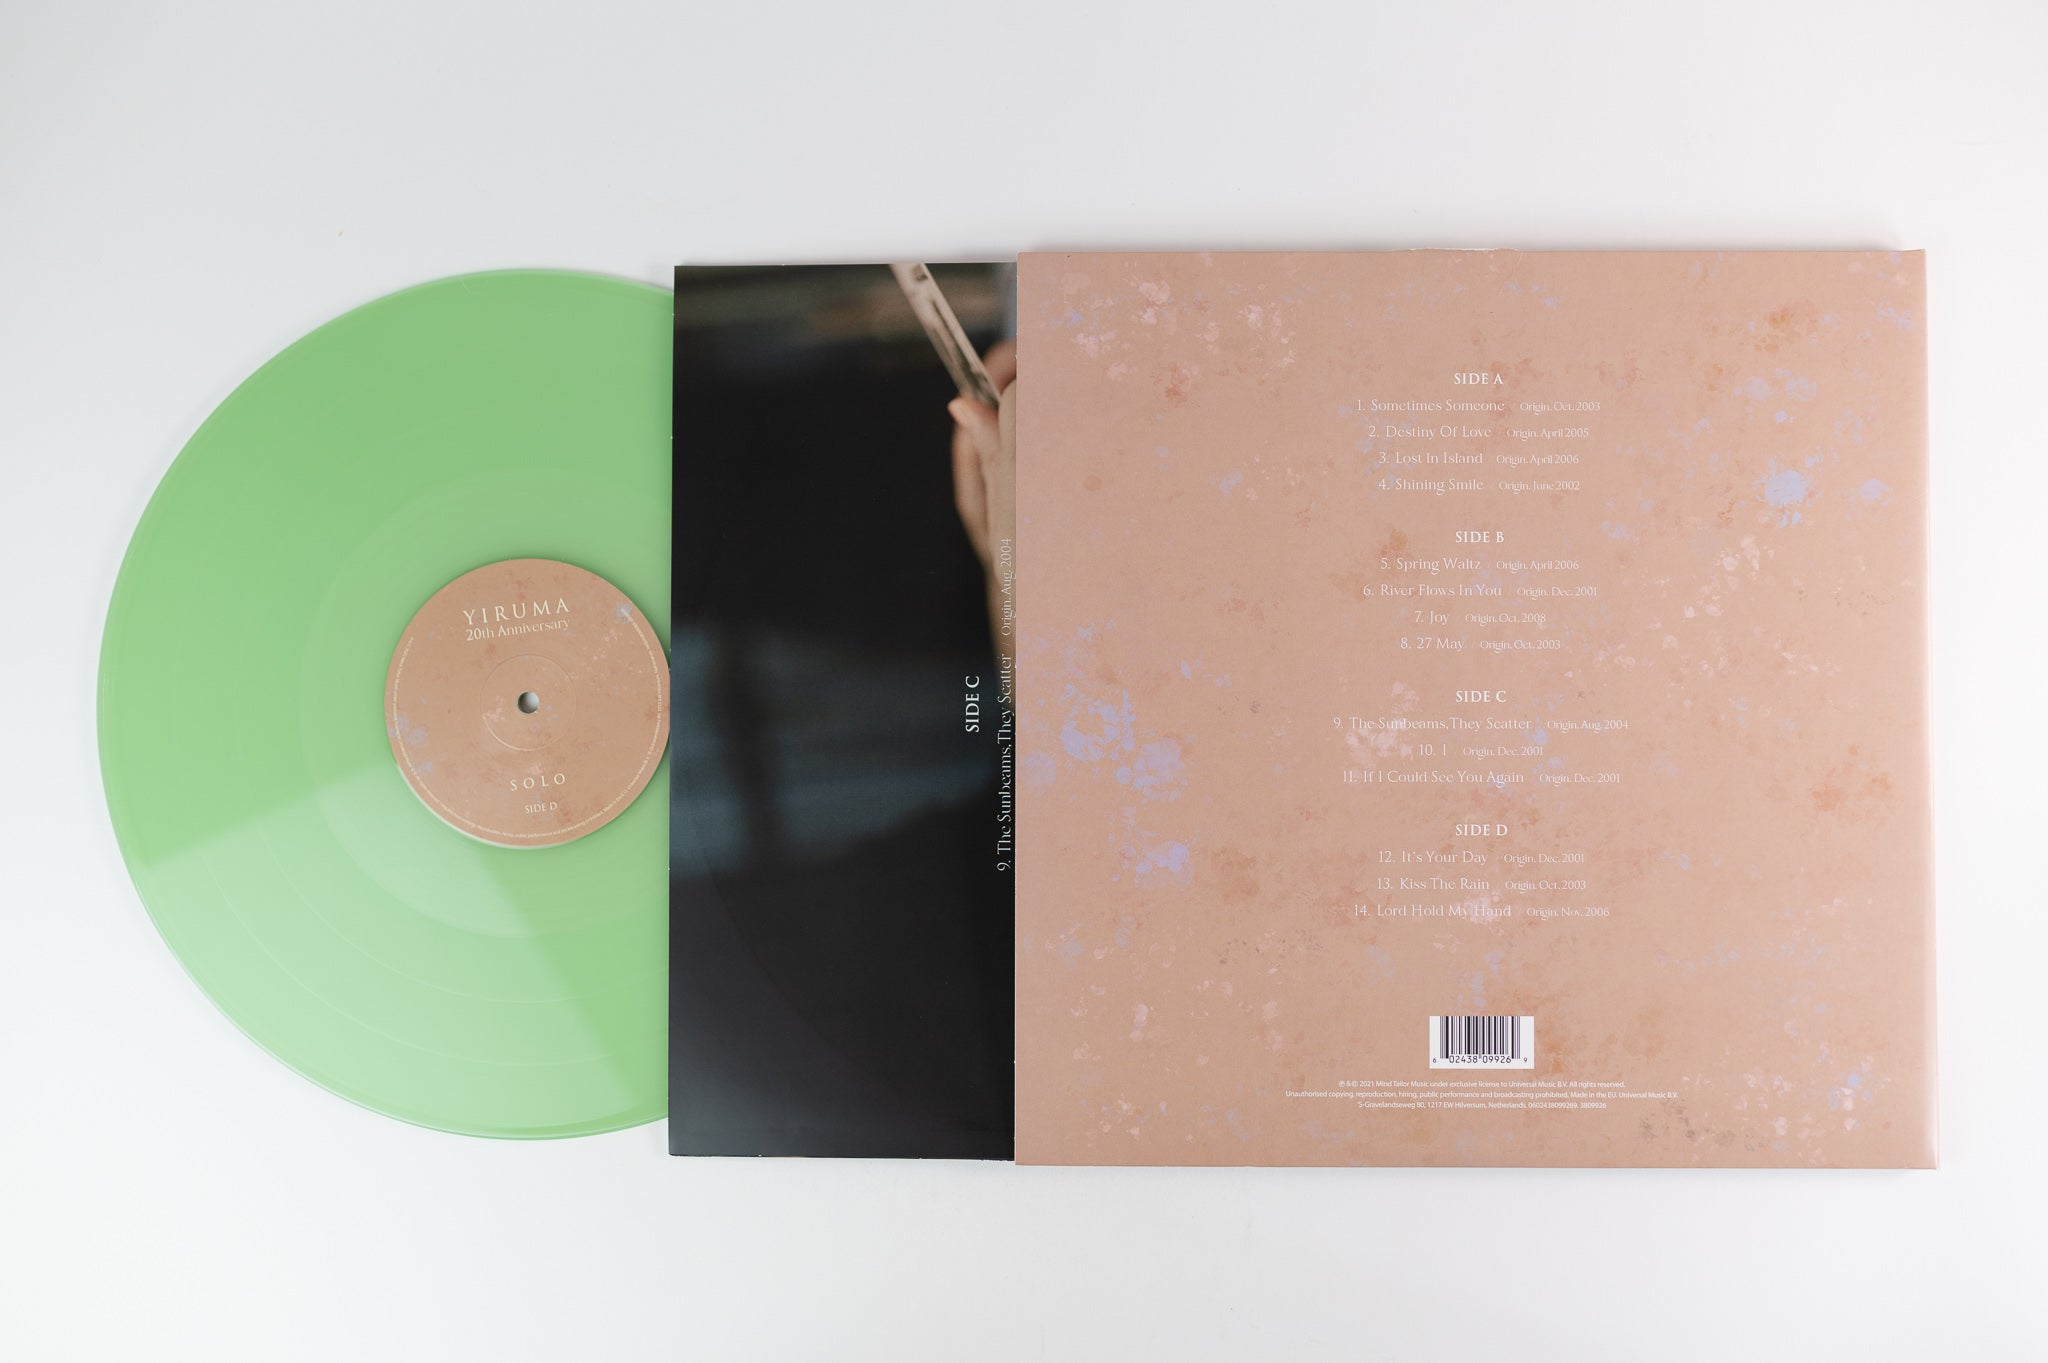 Yiruma - Solo on Mild Tailor Music - Green Vinyl